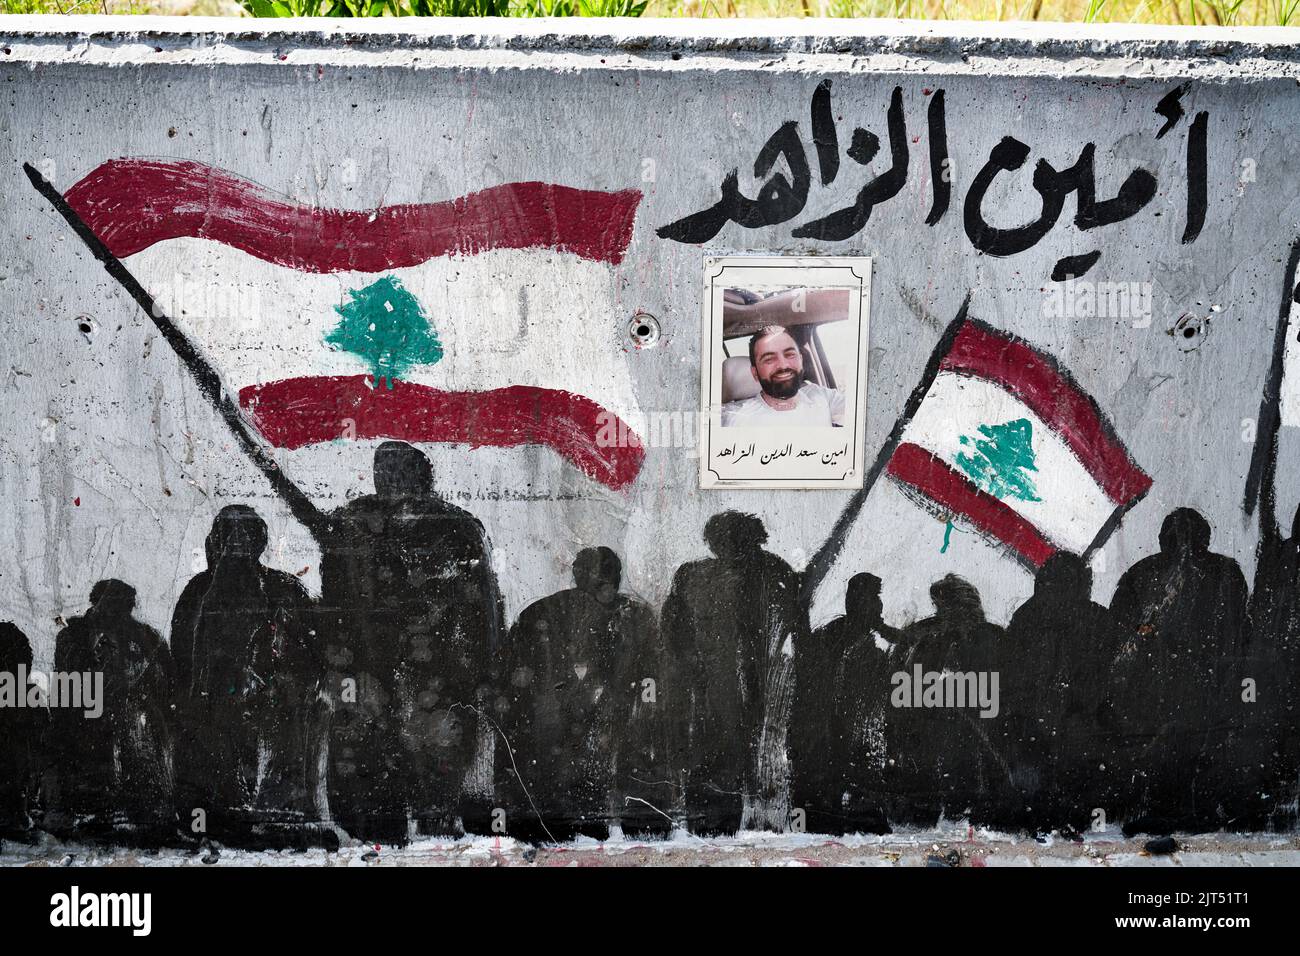 Beirut, Libano: Graffiti sul muro del porto con foto delle vittime della massiccia esplosione di 2.750 tonnellate di nitrato di ammonio immagazzinato nel porto della città che ha devastato il porto e parti della città il 08/04/2020 Foto Stock